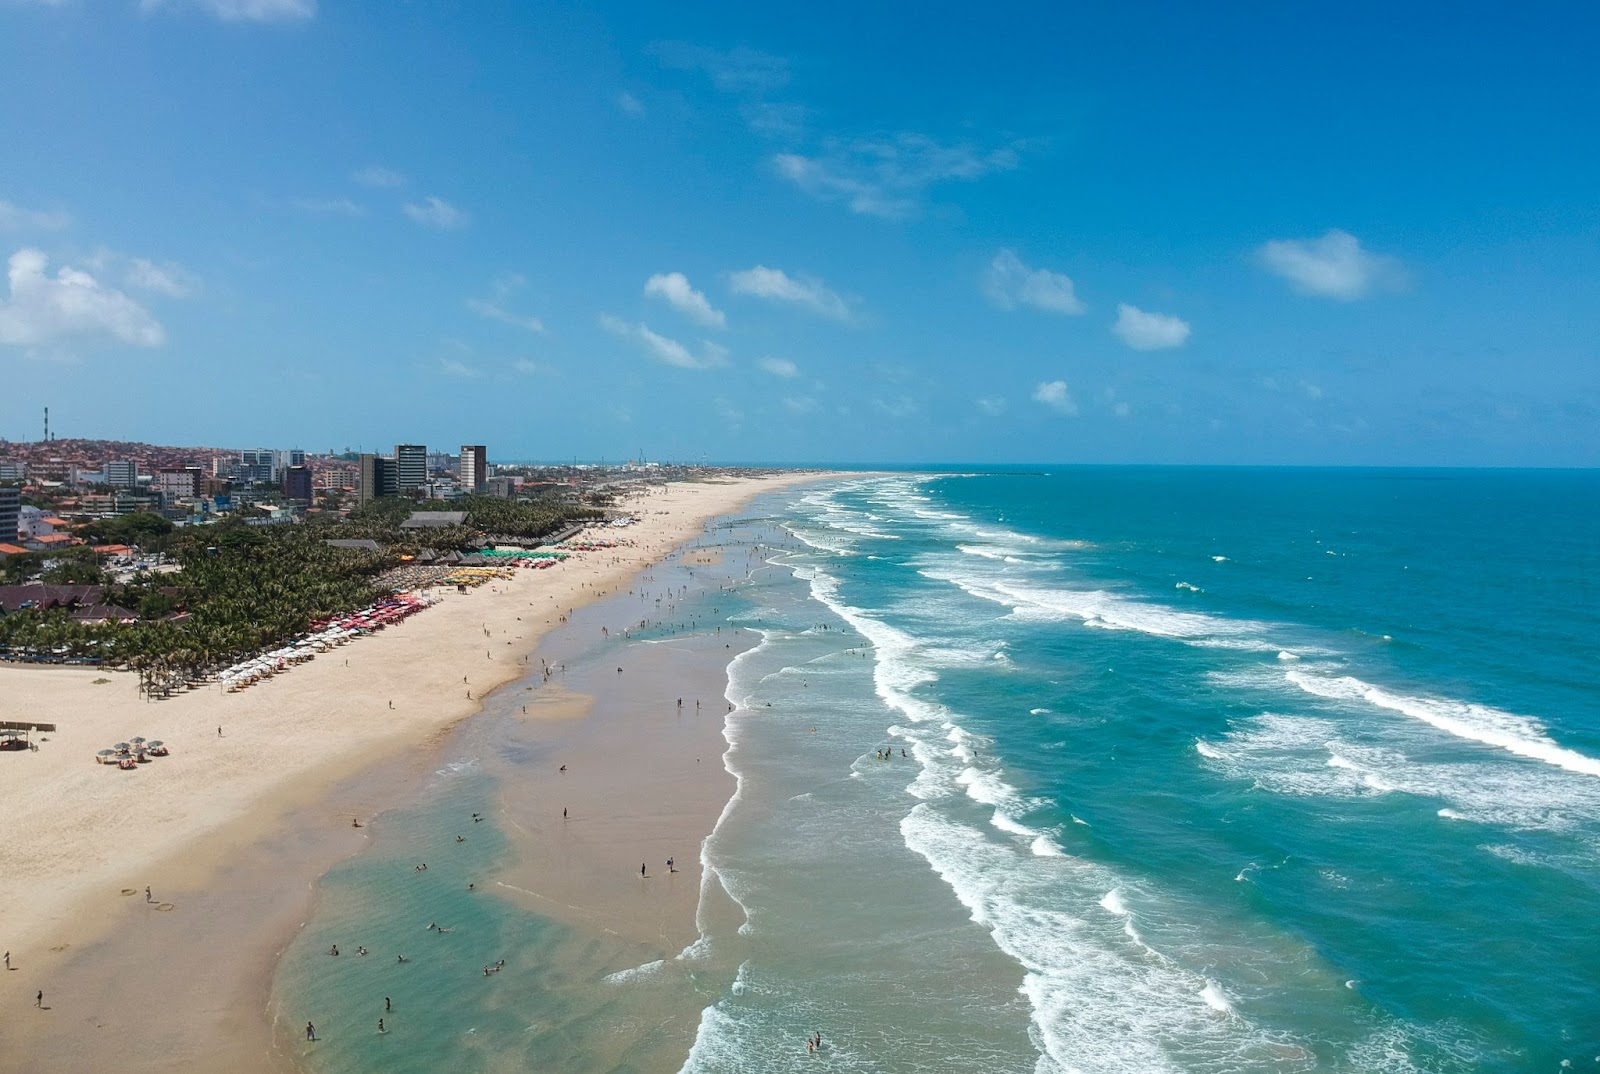 Vista aérea da Praia do Futuro em Fortaleza (CE).